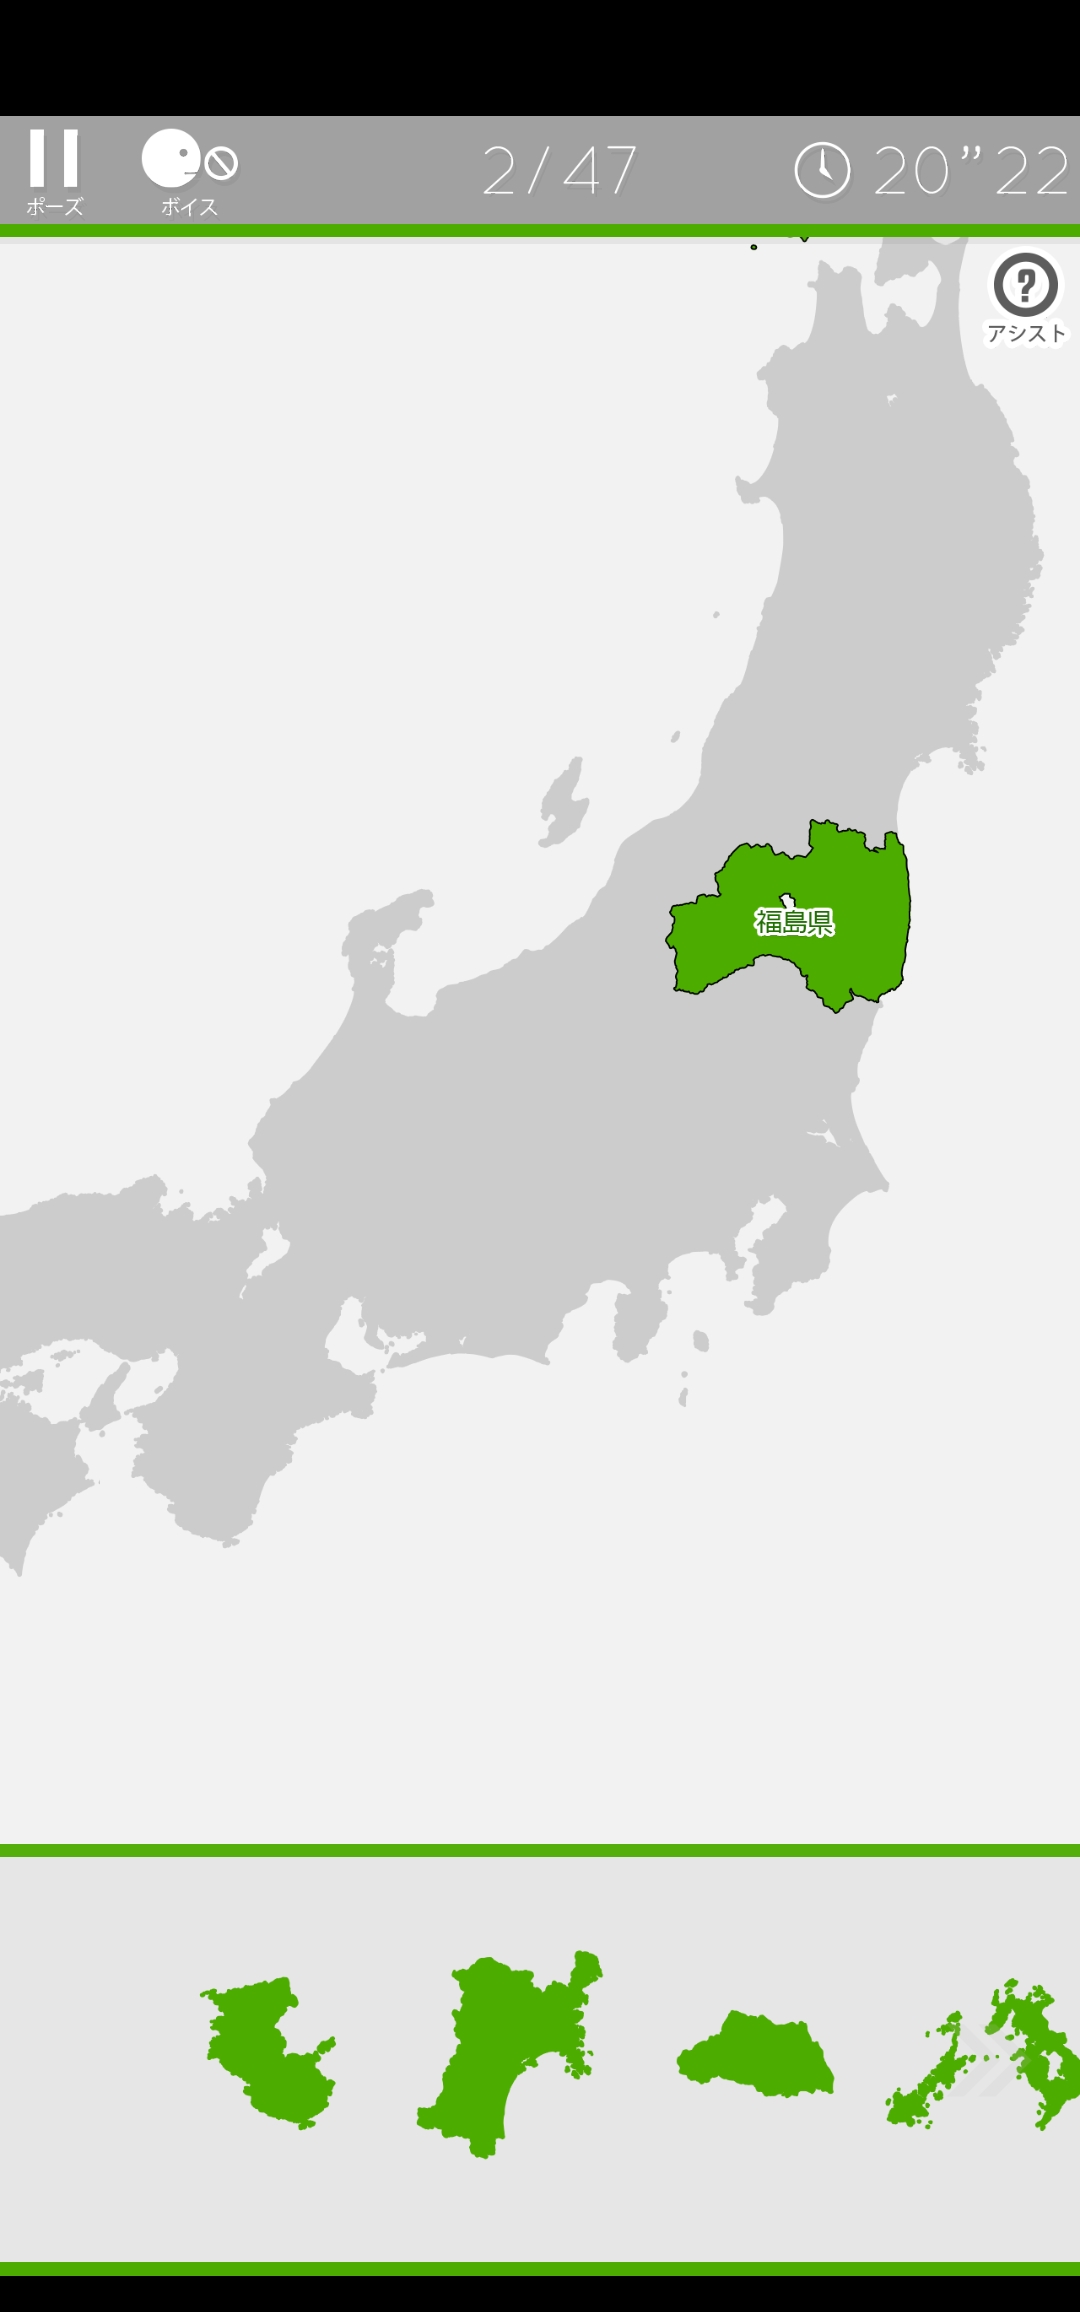 パズルで47都道府県の位置関係を徹底復習ができるゲームアプリ あそんでまなべる 日本地図パズル Dime アットダイム